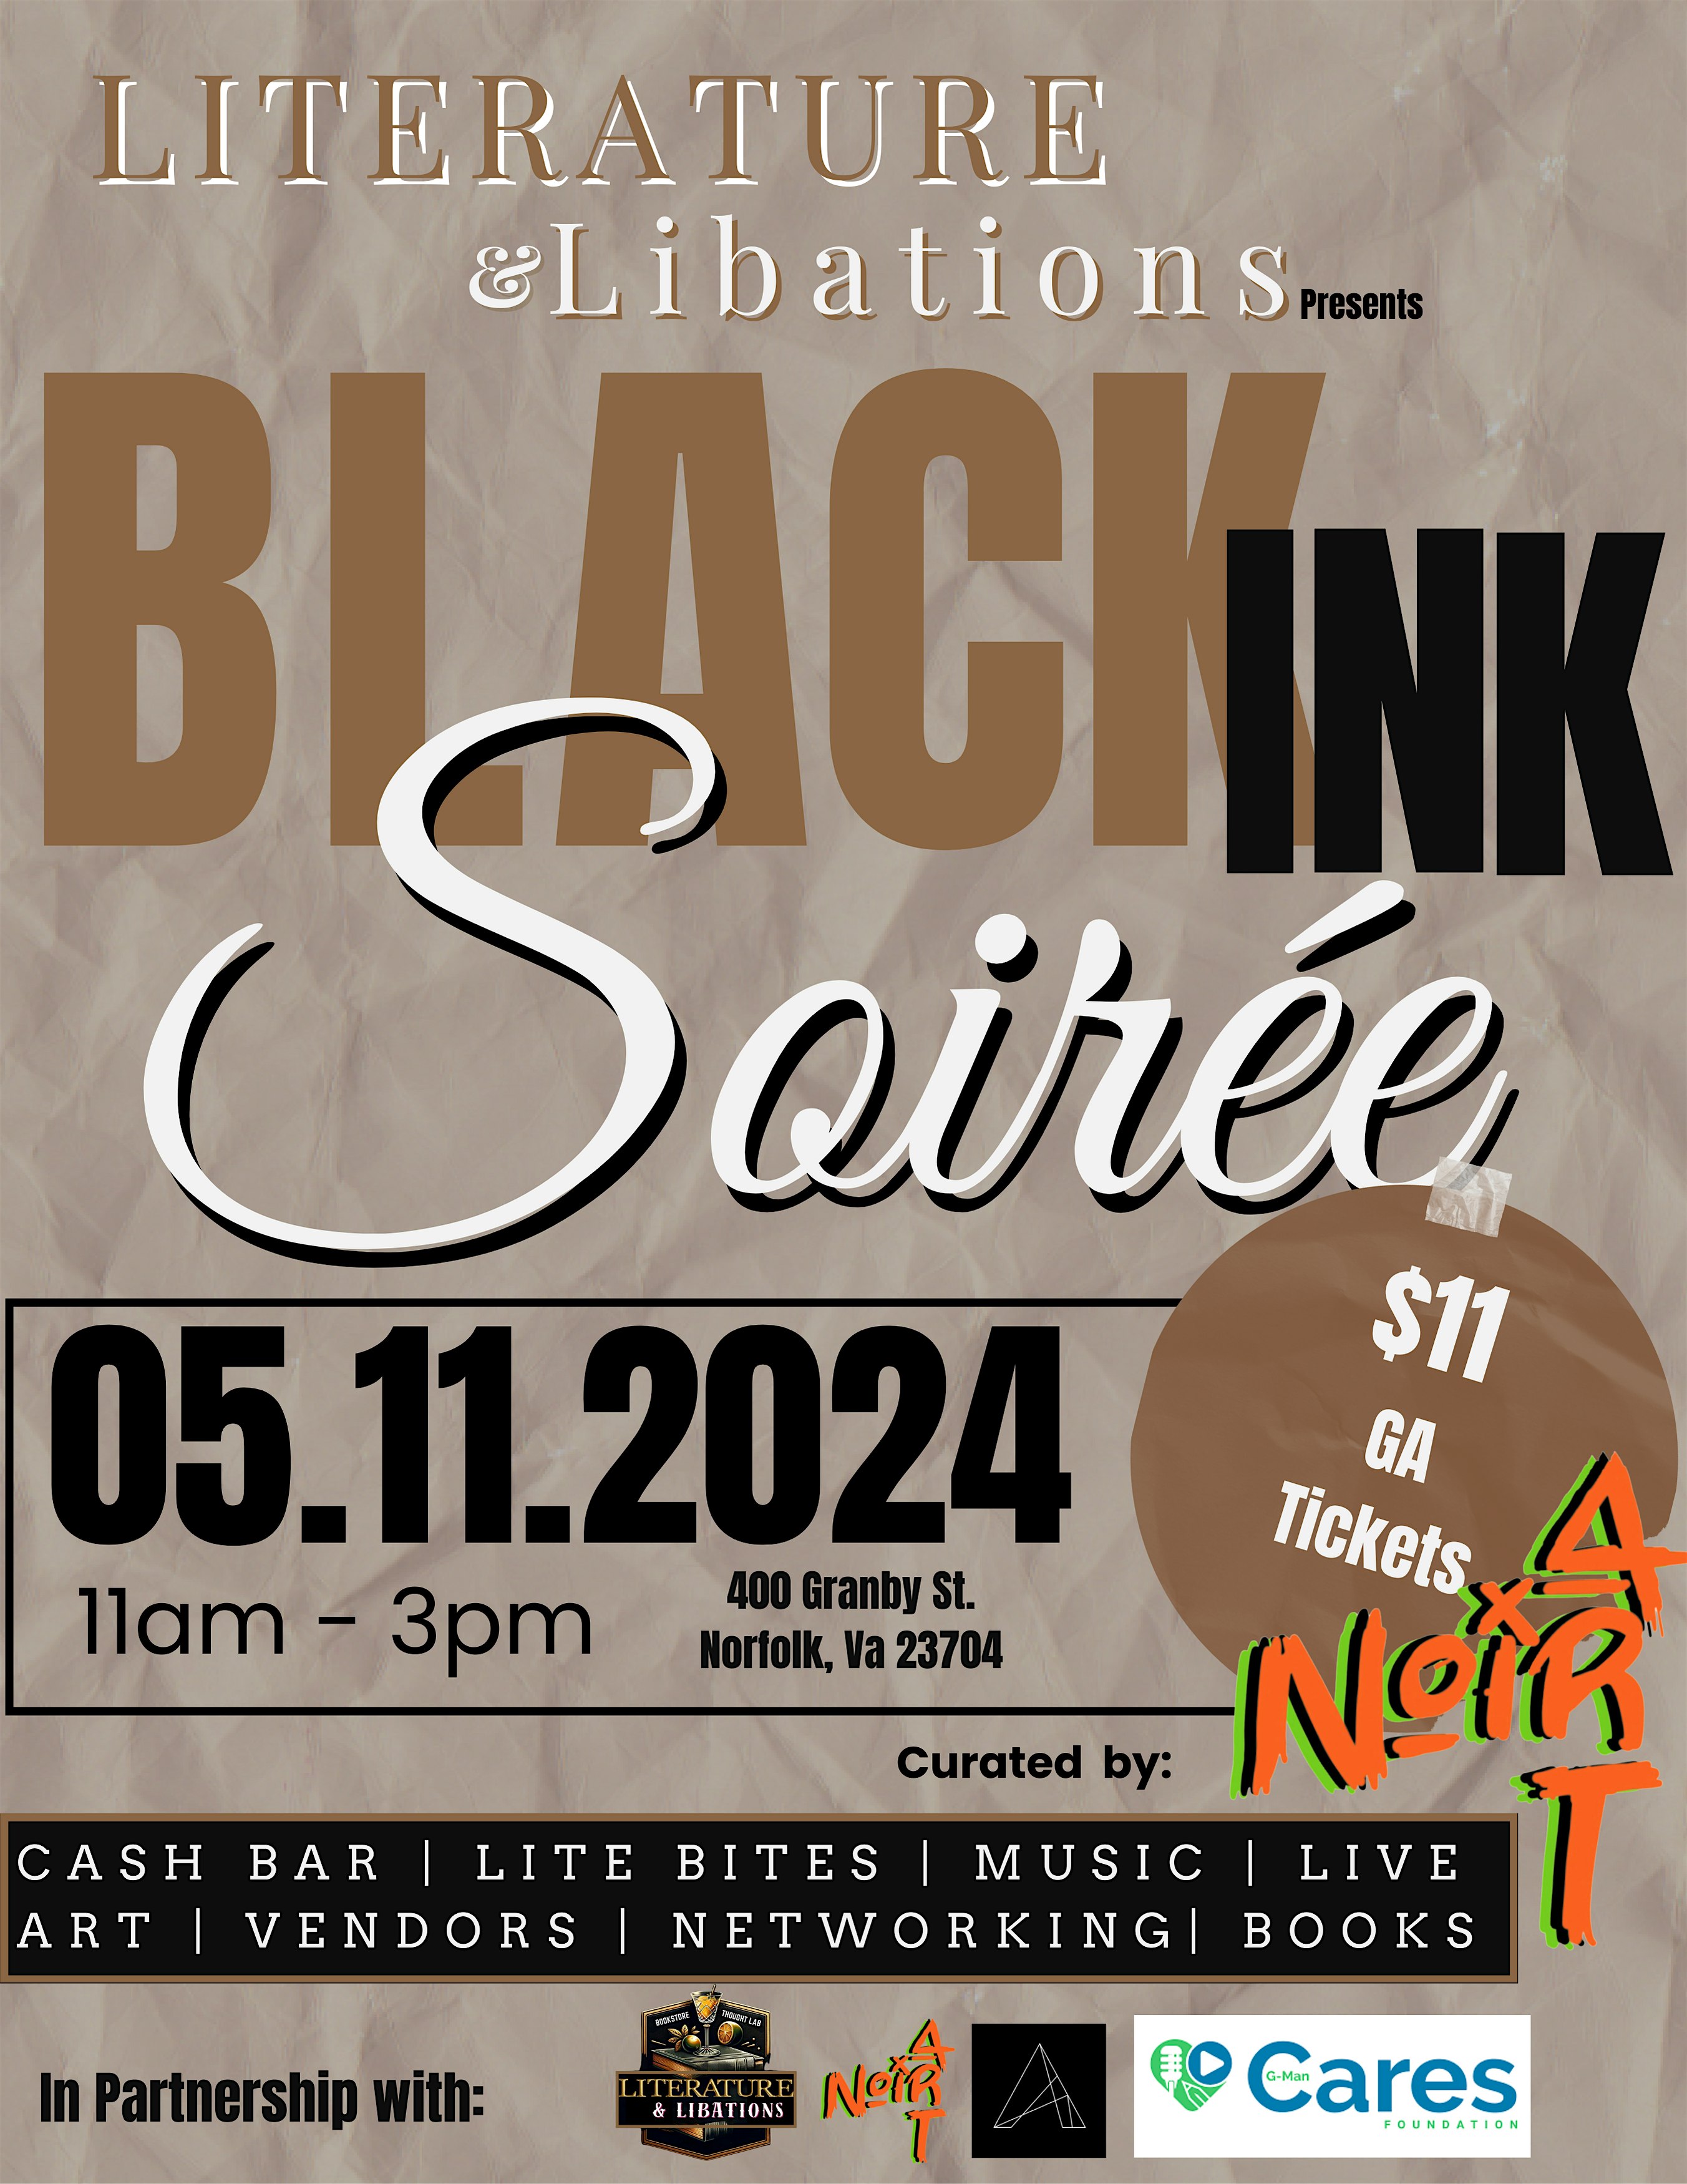 Literature & Libations presents: Black Ink Soir\u00e9e